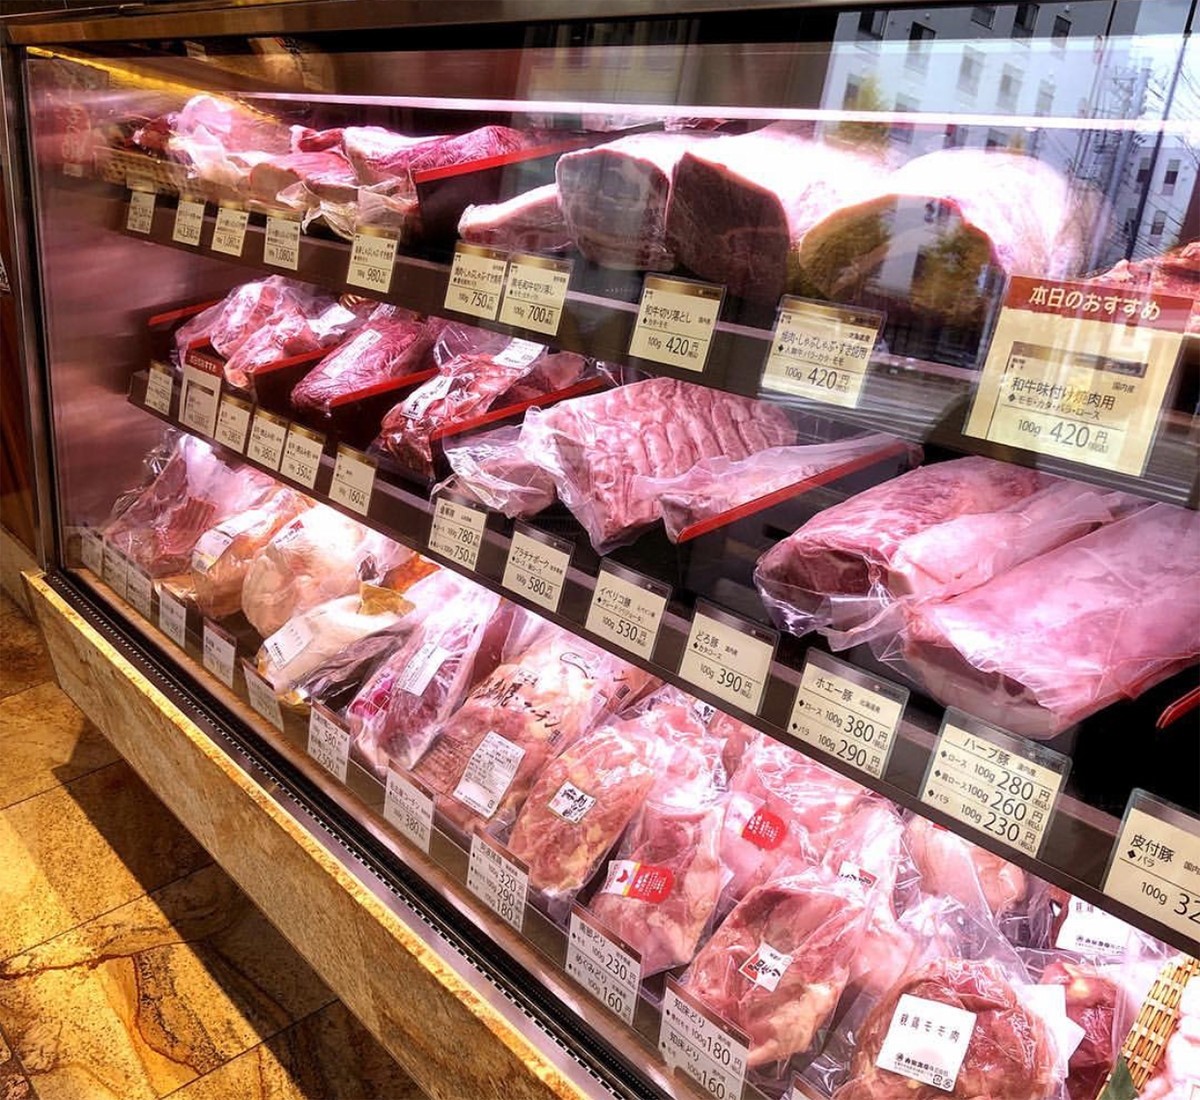 大金牛肉店 希少部位 熟成肉 ジビエなど様々な肉を取り扱う札幌の肉屋 Hokkaido Bound